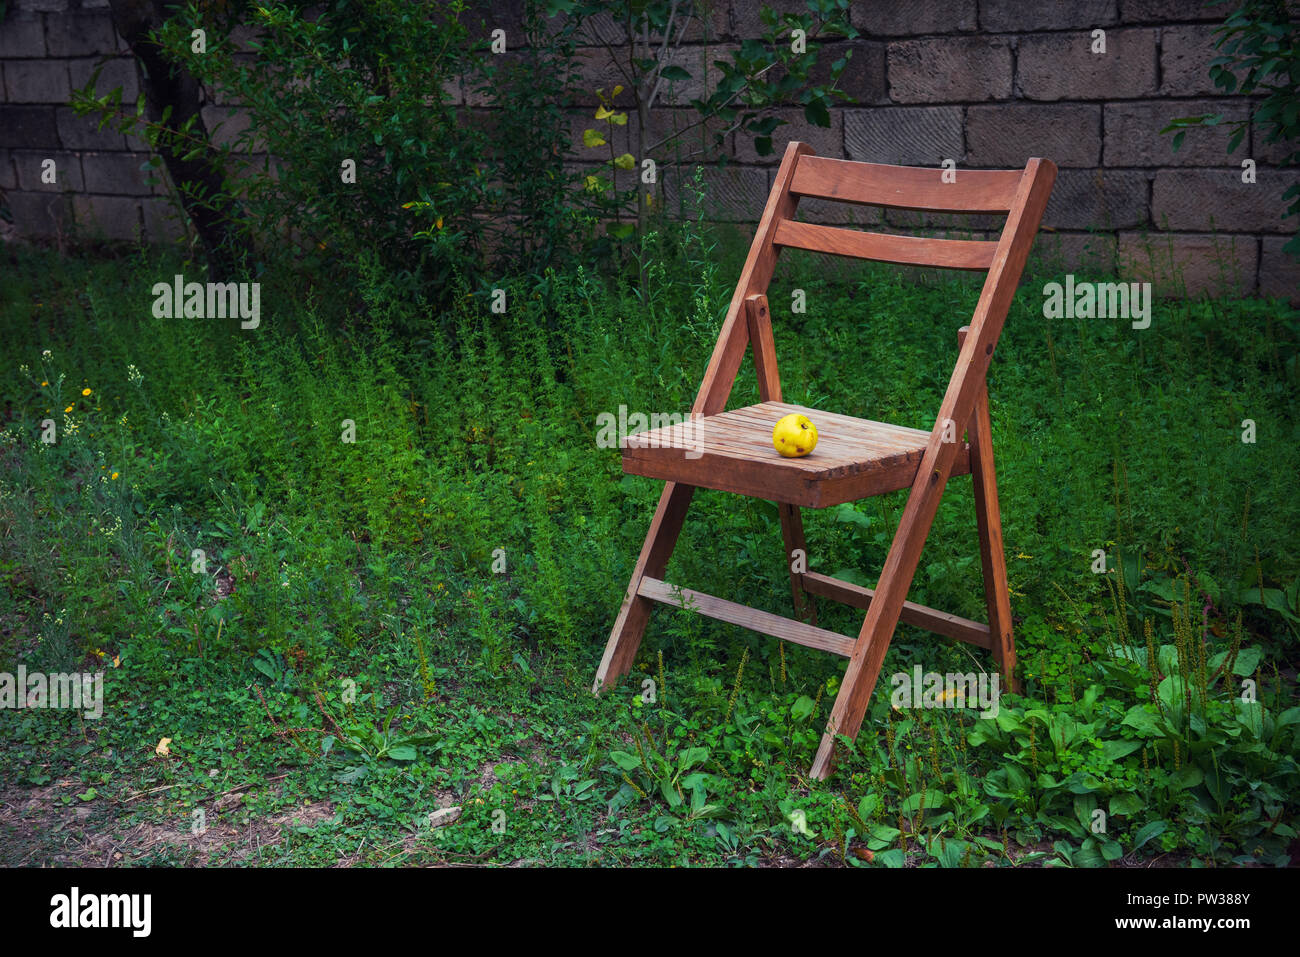 Alte hölzerne Klappstuhl in der Country Garden Stockfotografie - Alamy